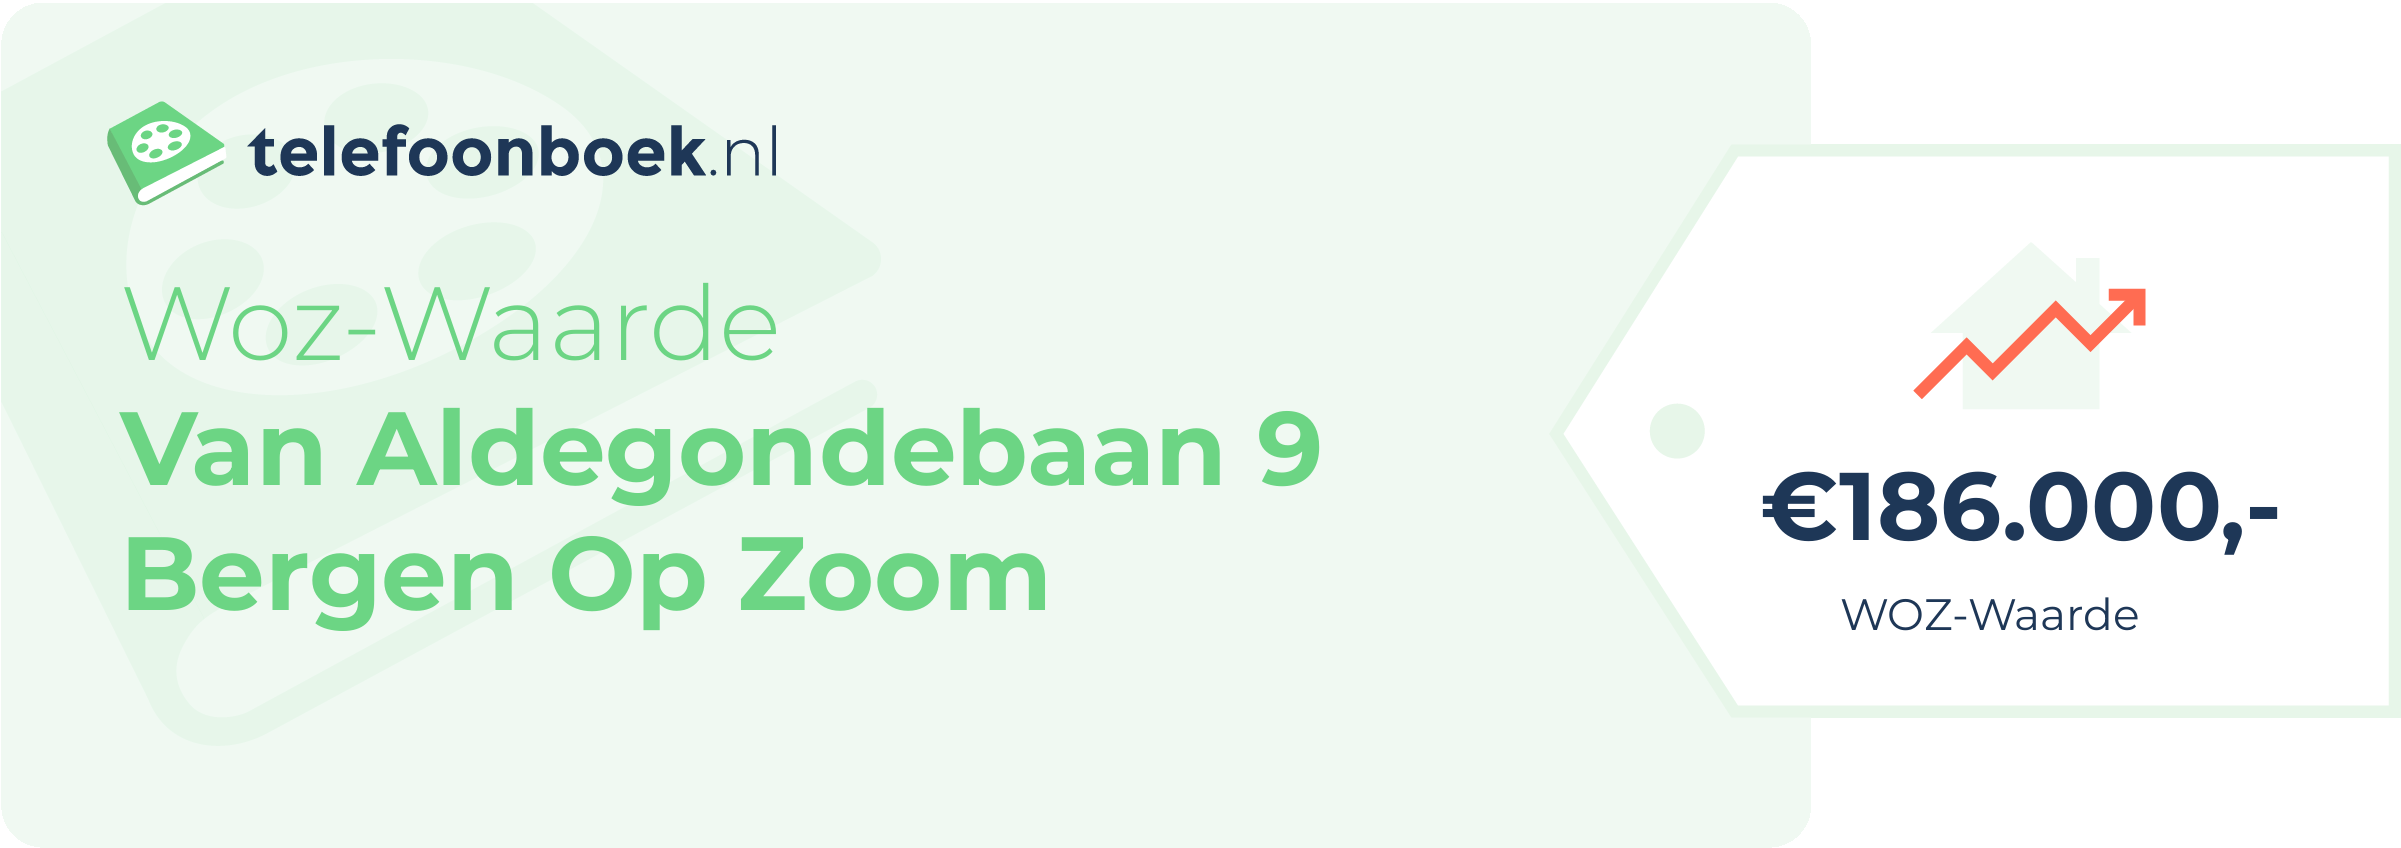 WOZ-waarde Van Aldegondebaan 9 Bergen Op Zoom